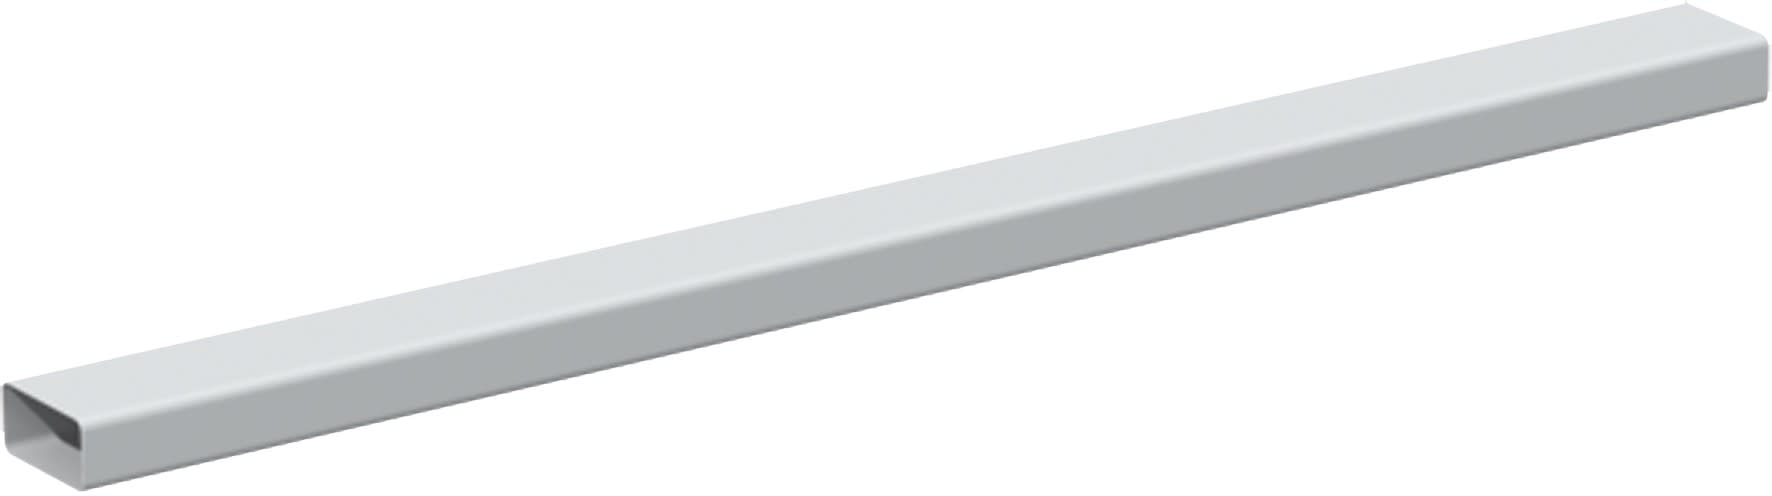 S&P - Conduit rectangulaire PVC rigide 55 x 220 mm, longueur 3 m, gamme TUBPLA